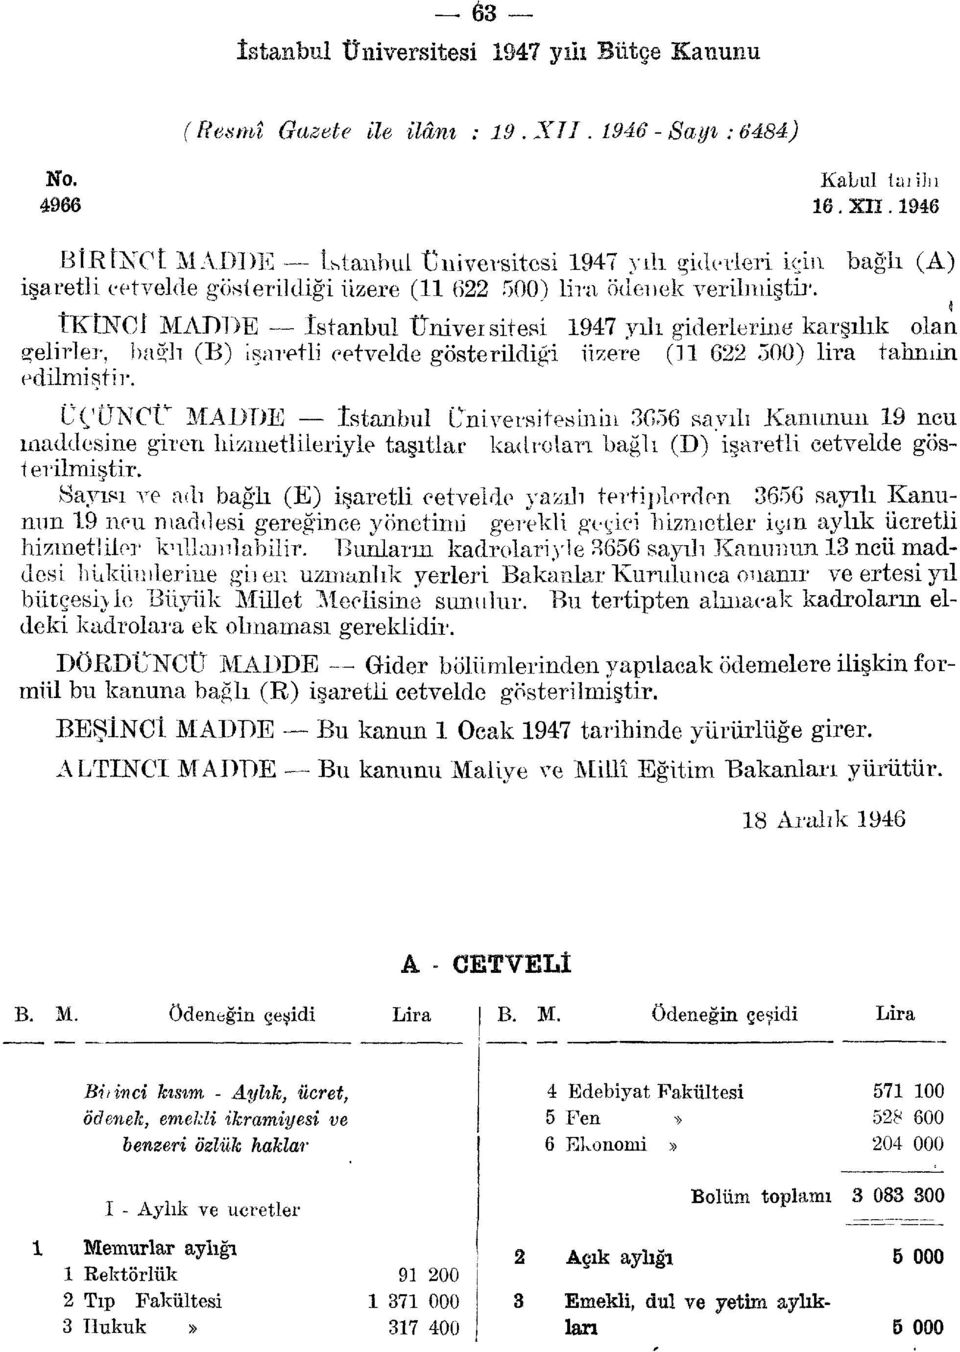 bağlı (A) İKİNCİ MADDE İstanbul Üniversitesi 947 yılı giderlerine karşılık olan gelirler, ba lı (B) işaretli cetvelde gösterildiği üzere ( 6 500) lira tahmin edilmiştir.